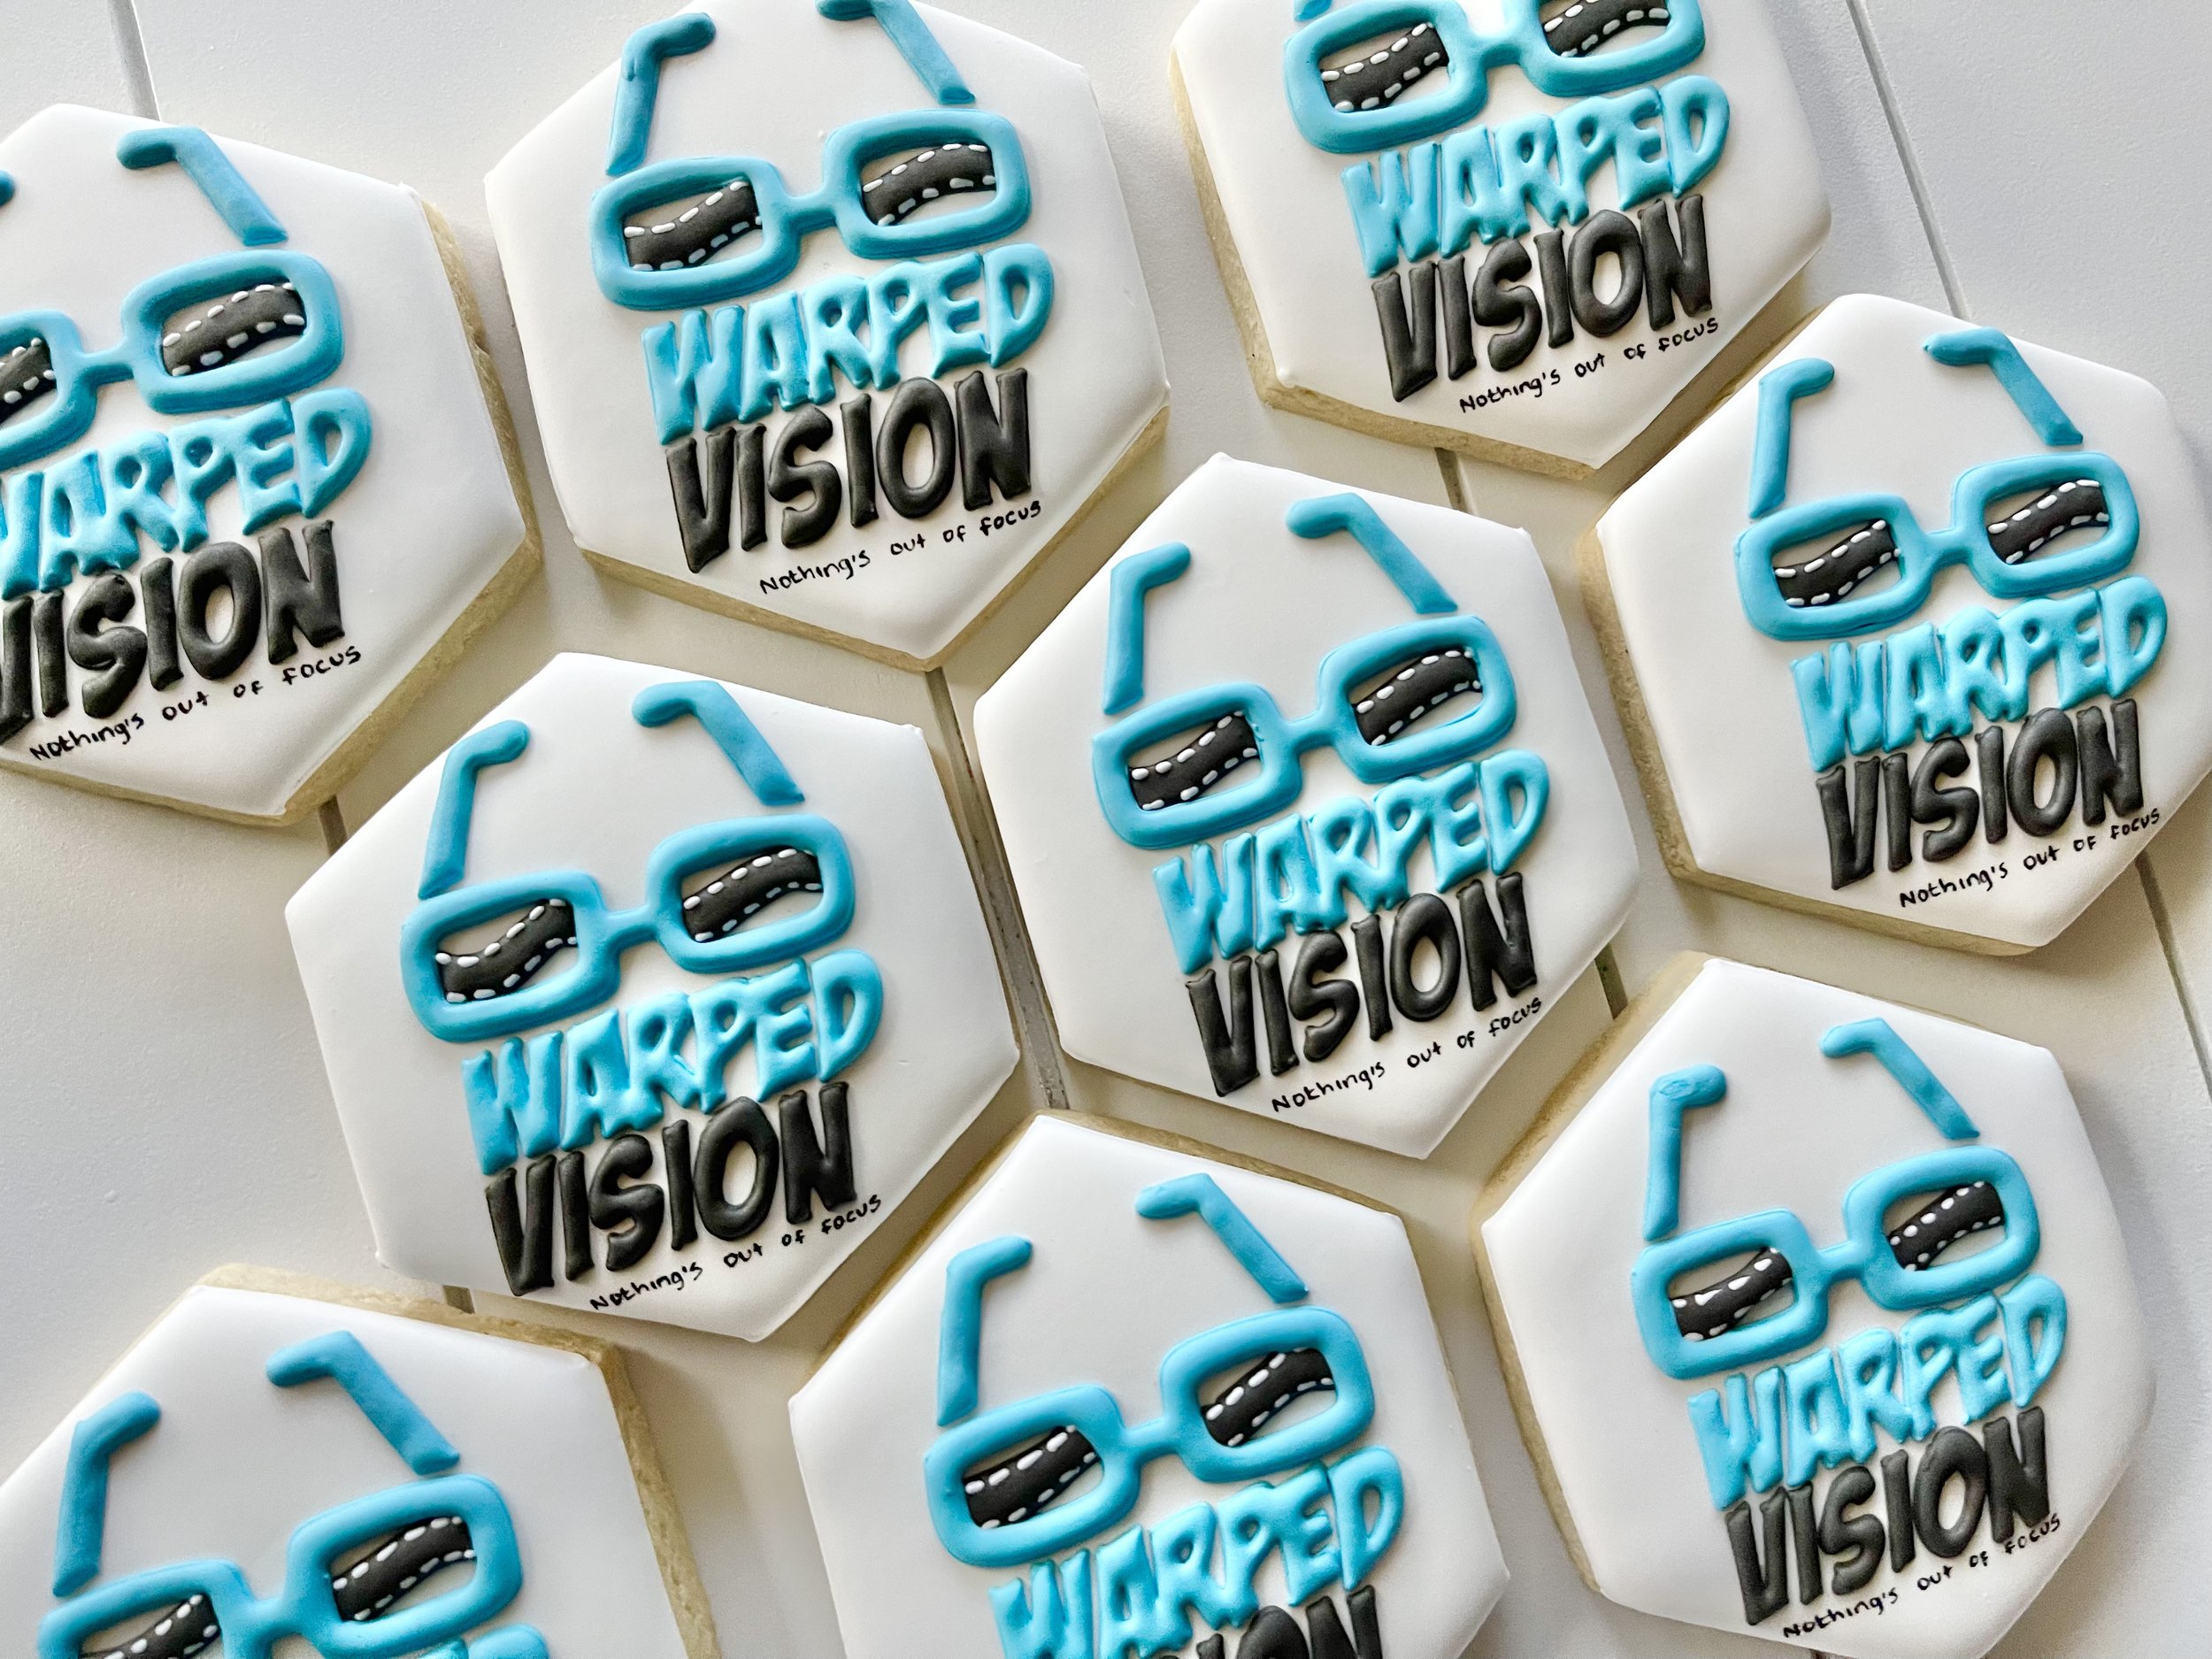 custom cookies tampa business warped vision b.jpg